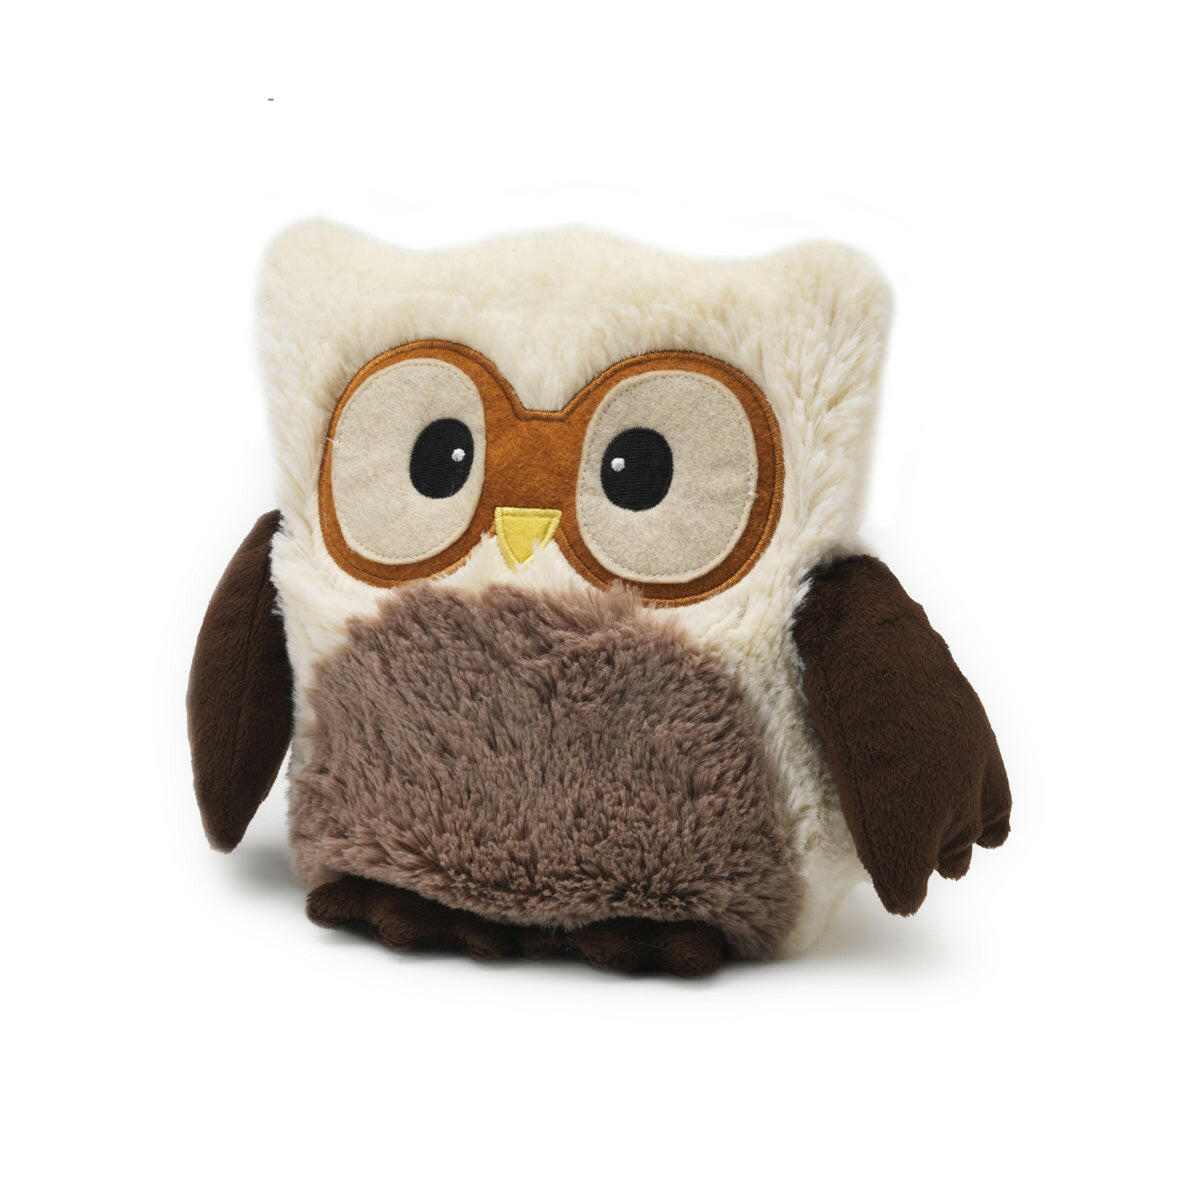 Hooty Heatable Owl